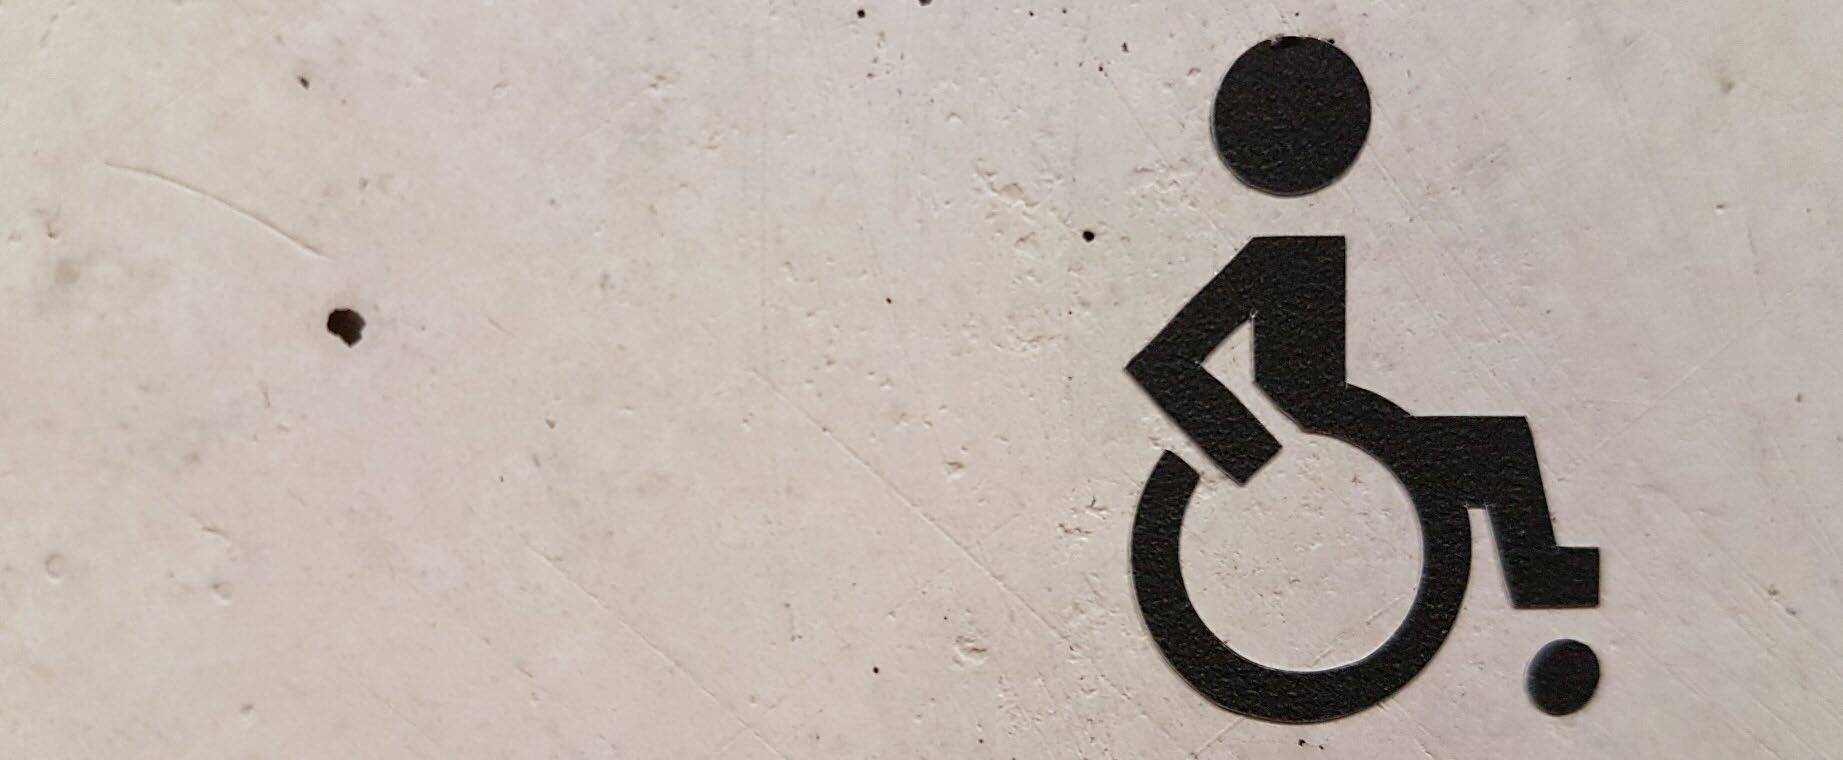 Ein auf dem Boden aufgemaltes Rollstuhlfahrer-Logo.